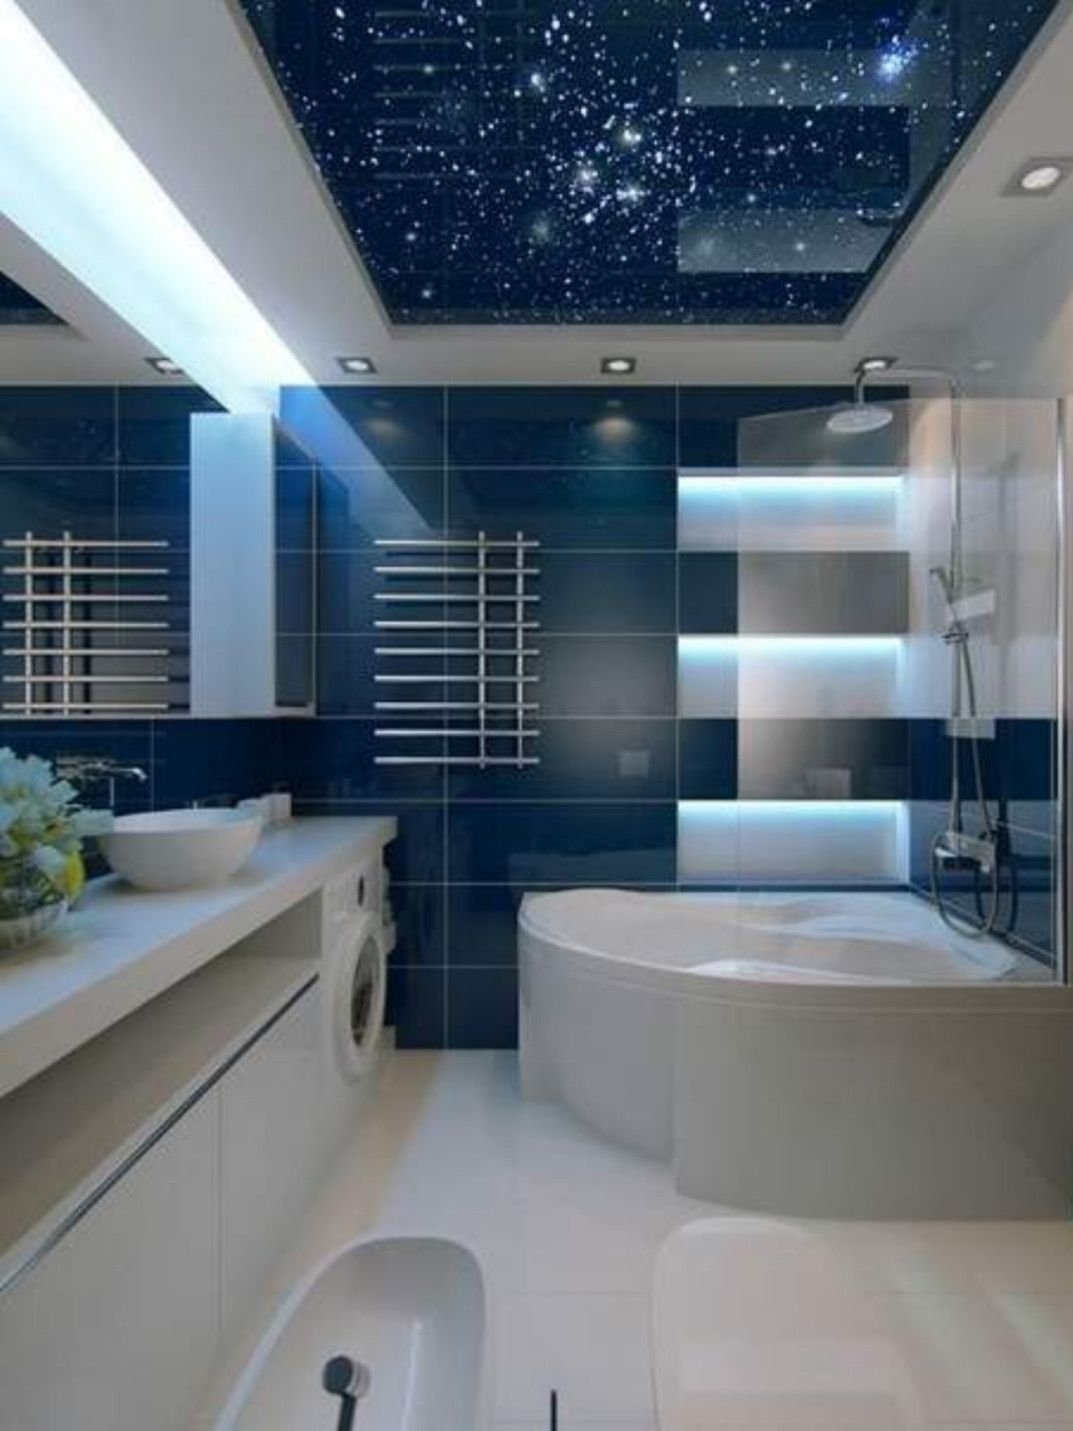 Ванной комната как красиво сделать. Натяжной потолок в ванней. Ванная комната. Красивая ванная комната. Натяжеойпотооок в ванной.